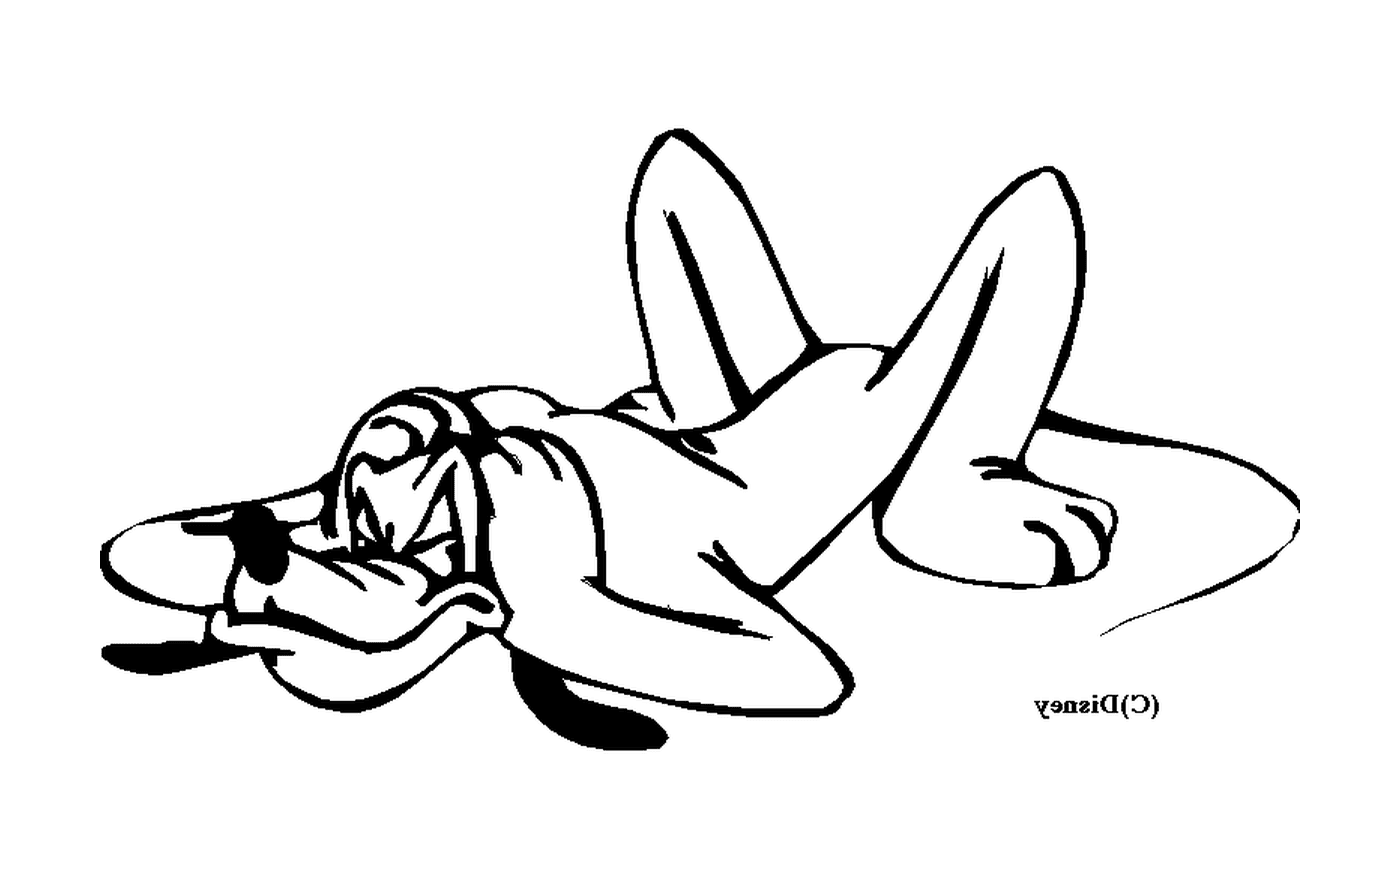   Femme allongée sur le sol 